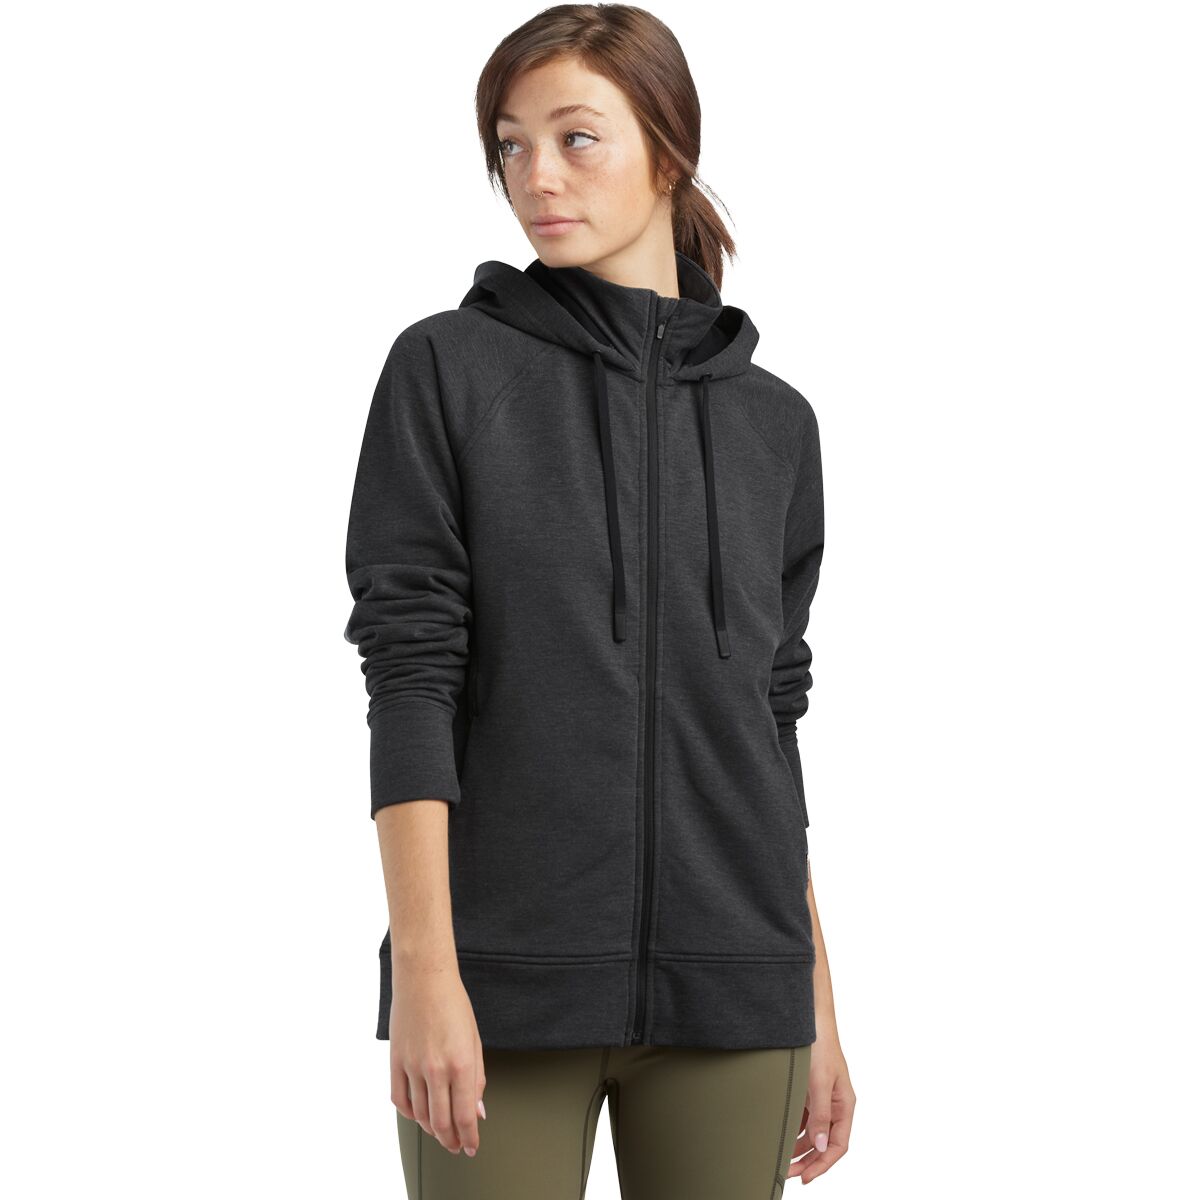 Emersion Fleece Hooded Jacket - Women